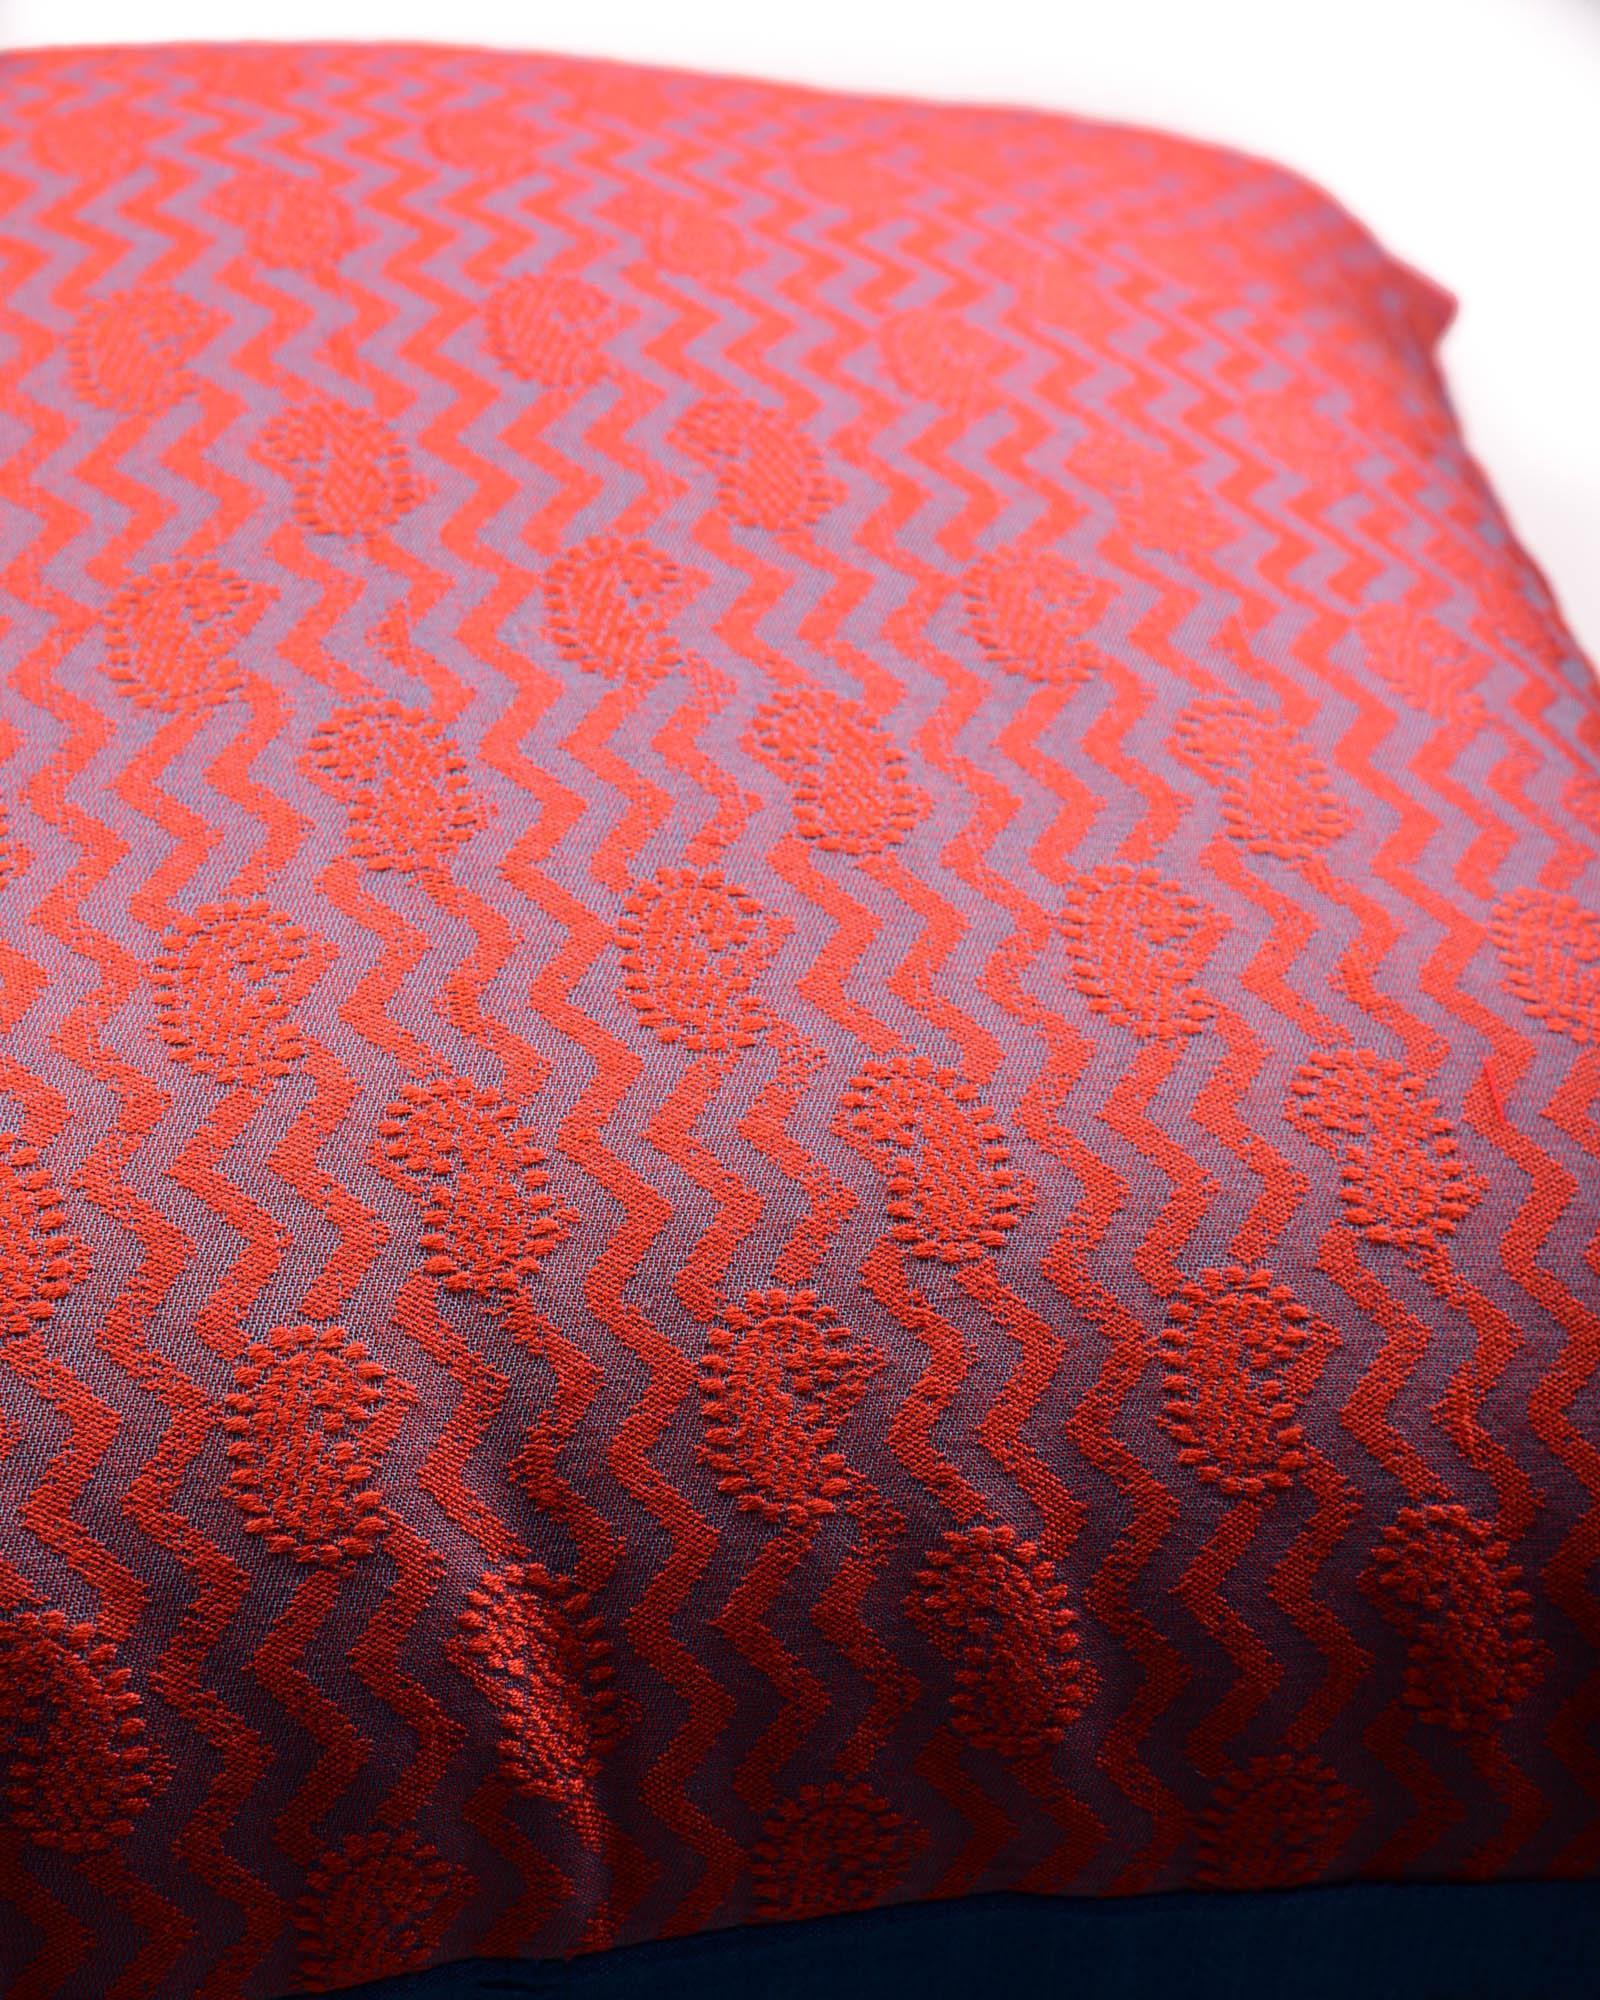 Salmon Pink Banarasi Tanchoi Cotton Silk Cushion Cover 16" - By HolyWeaves, Benares